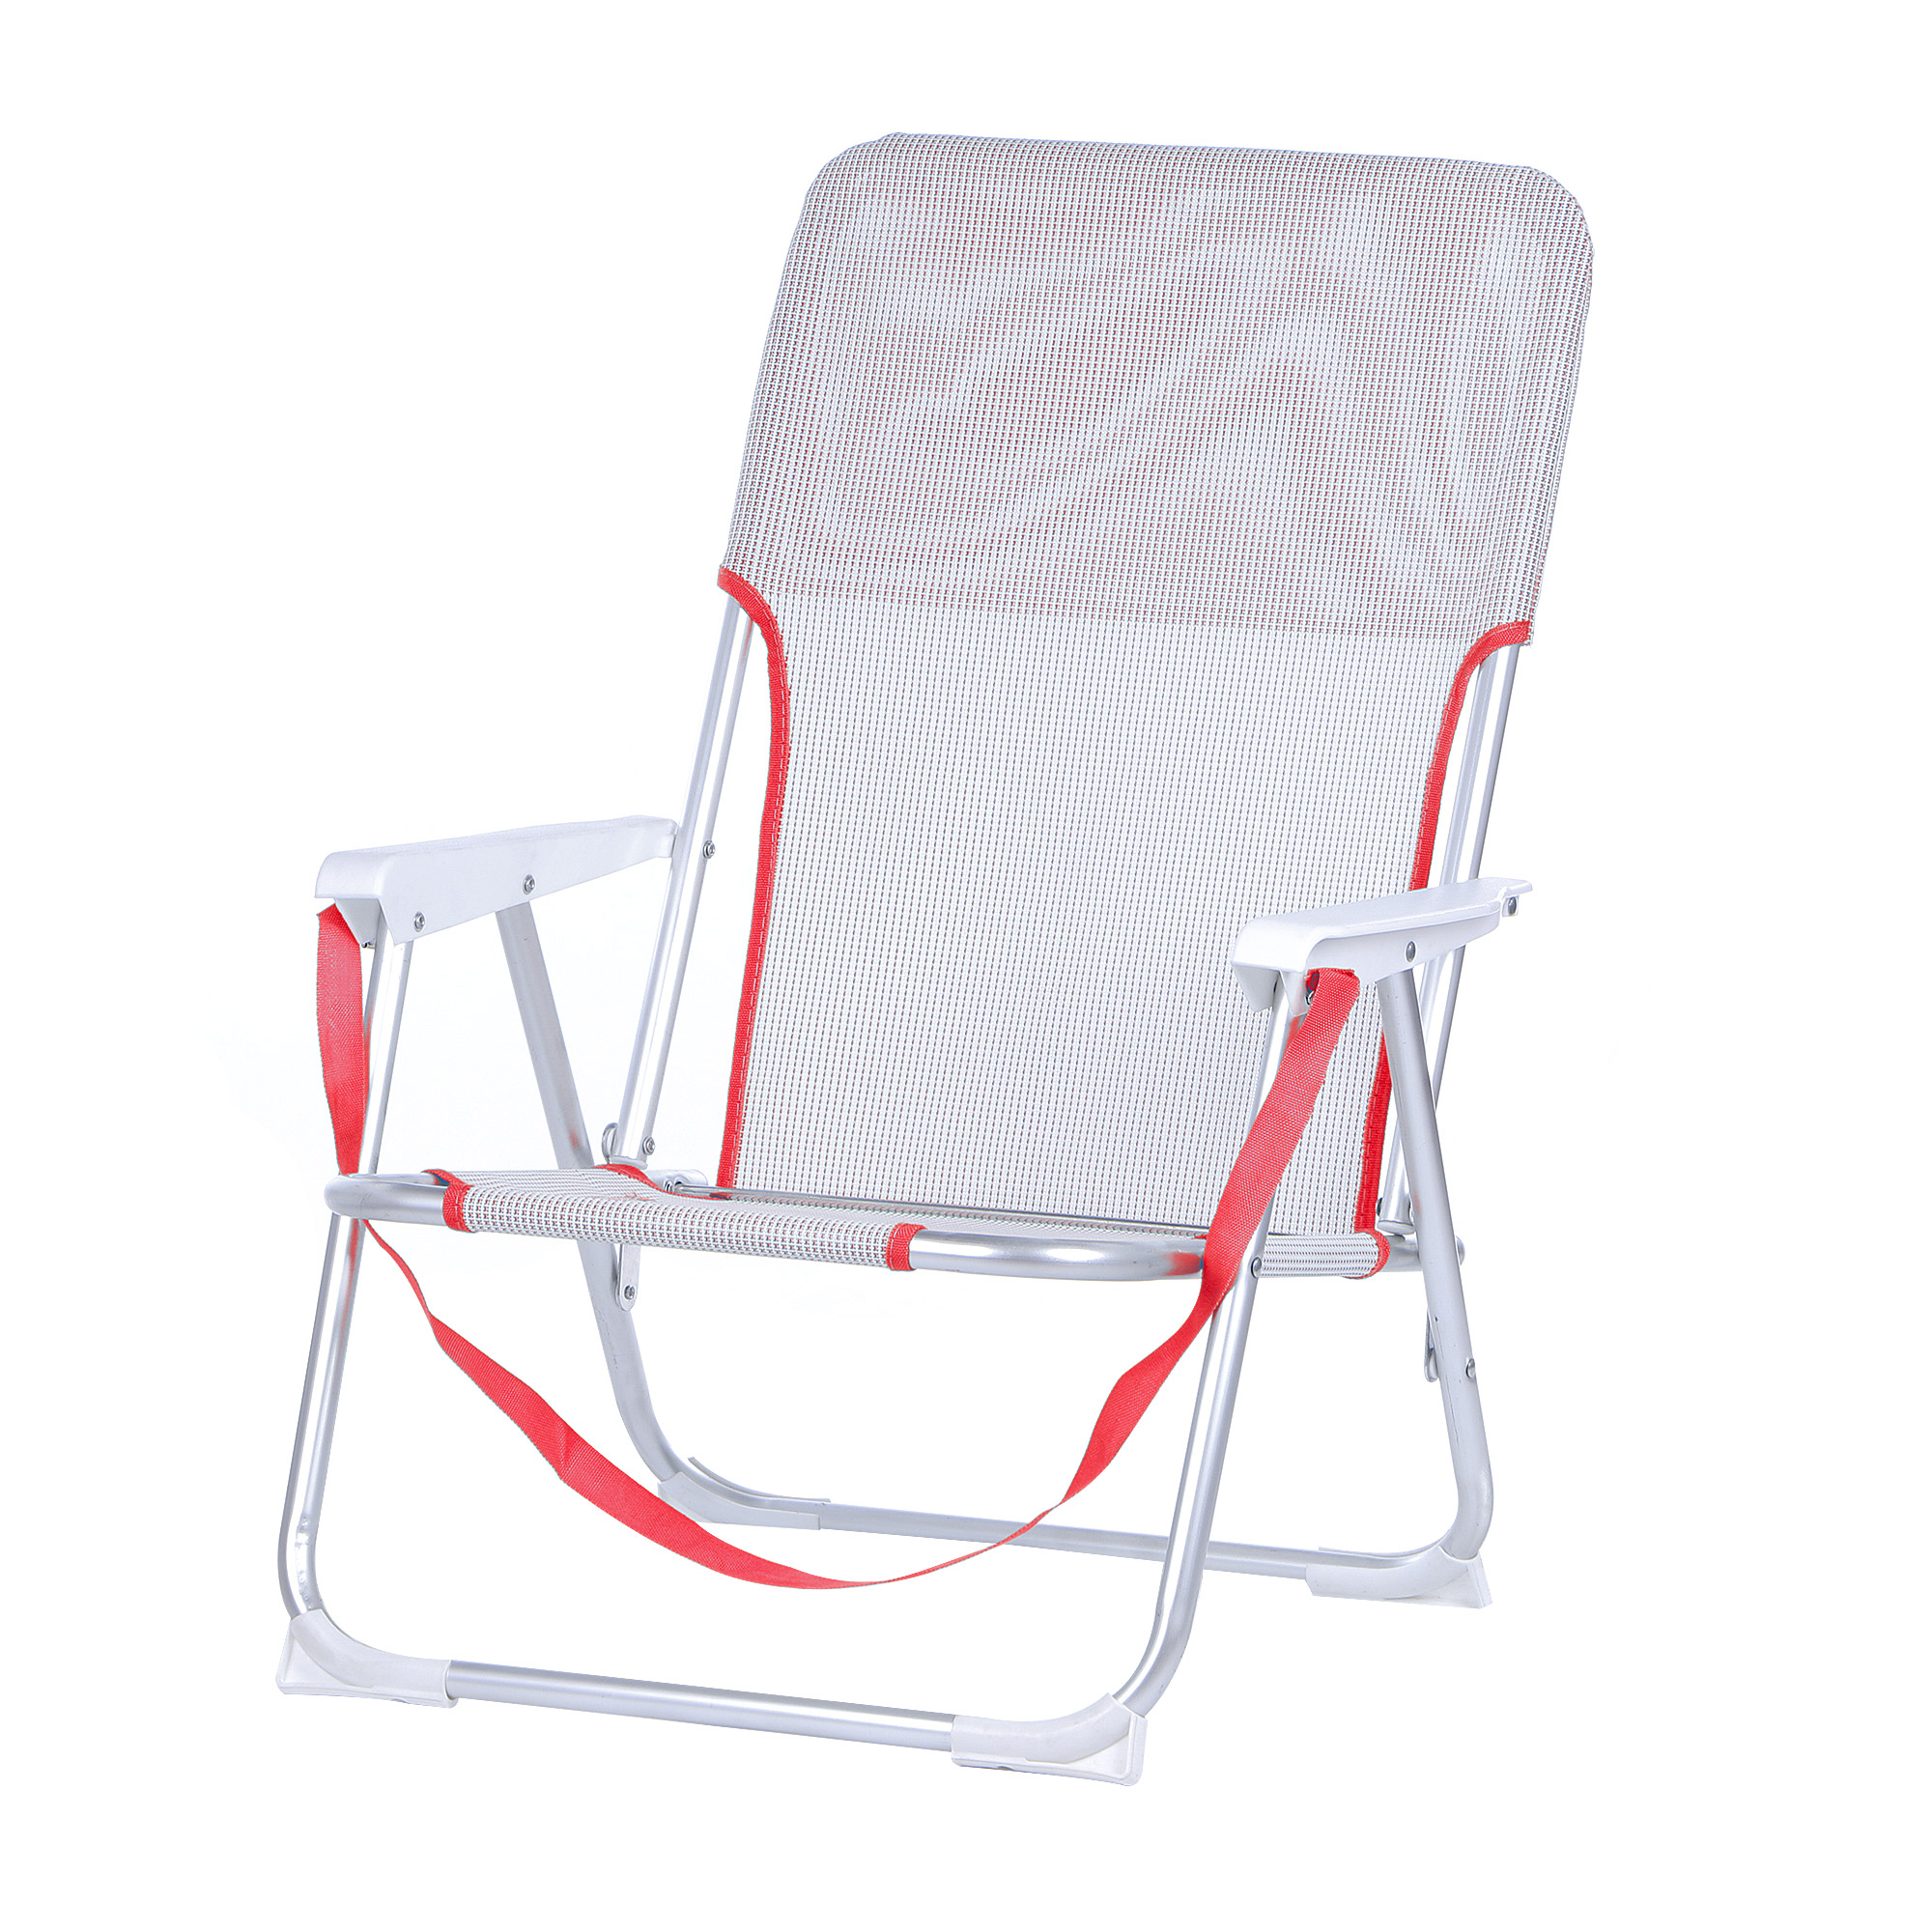 Кресло складное для кемпинга Koopman furniture 40x56x70cm, цвет в ассортименте, размер 40x56x70 см - фото 10